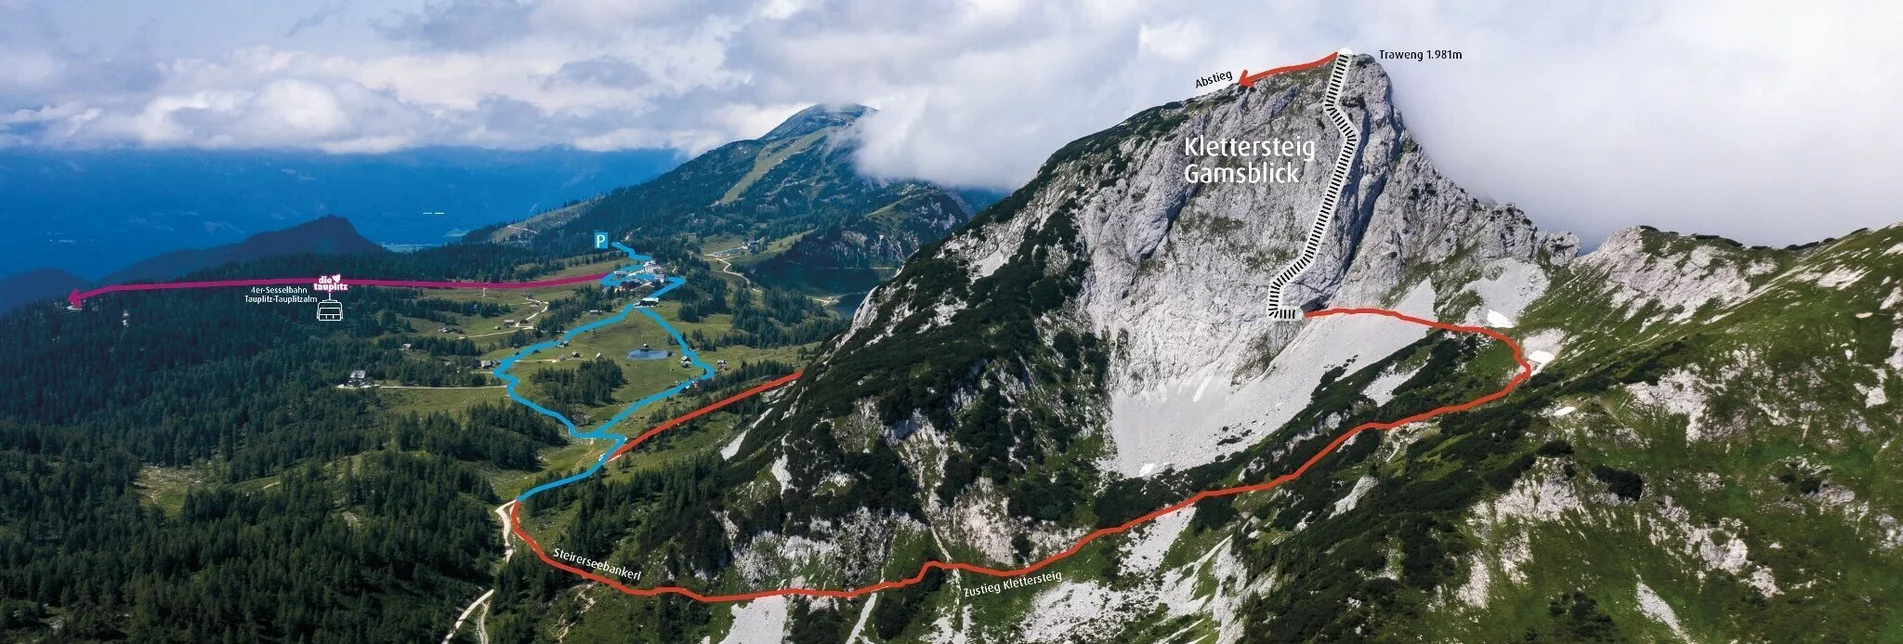 Klettersteig Klettersteig "Gamsblick" - Touren-Impression #1 | © TVB Ausseerland Salzkammergut